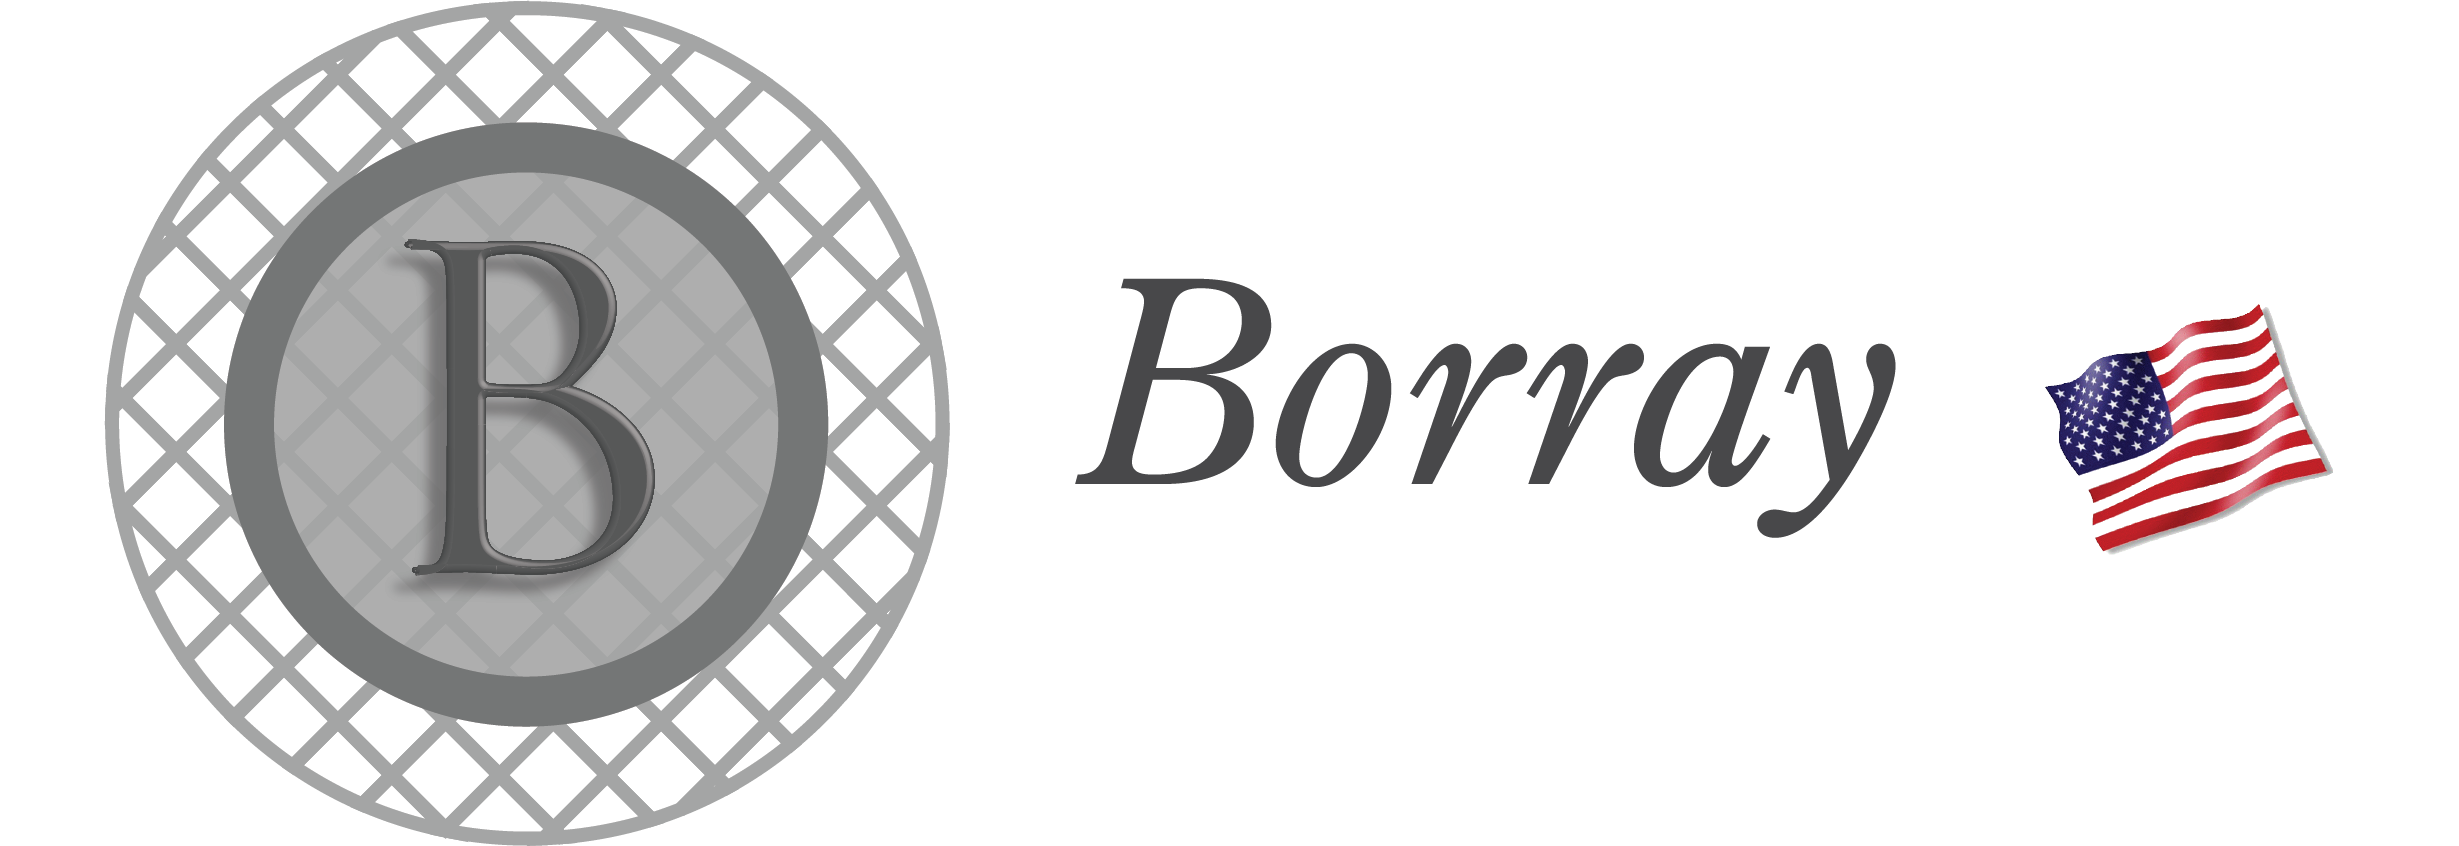 Borray Logo